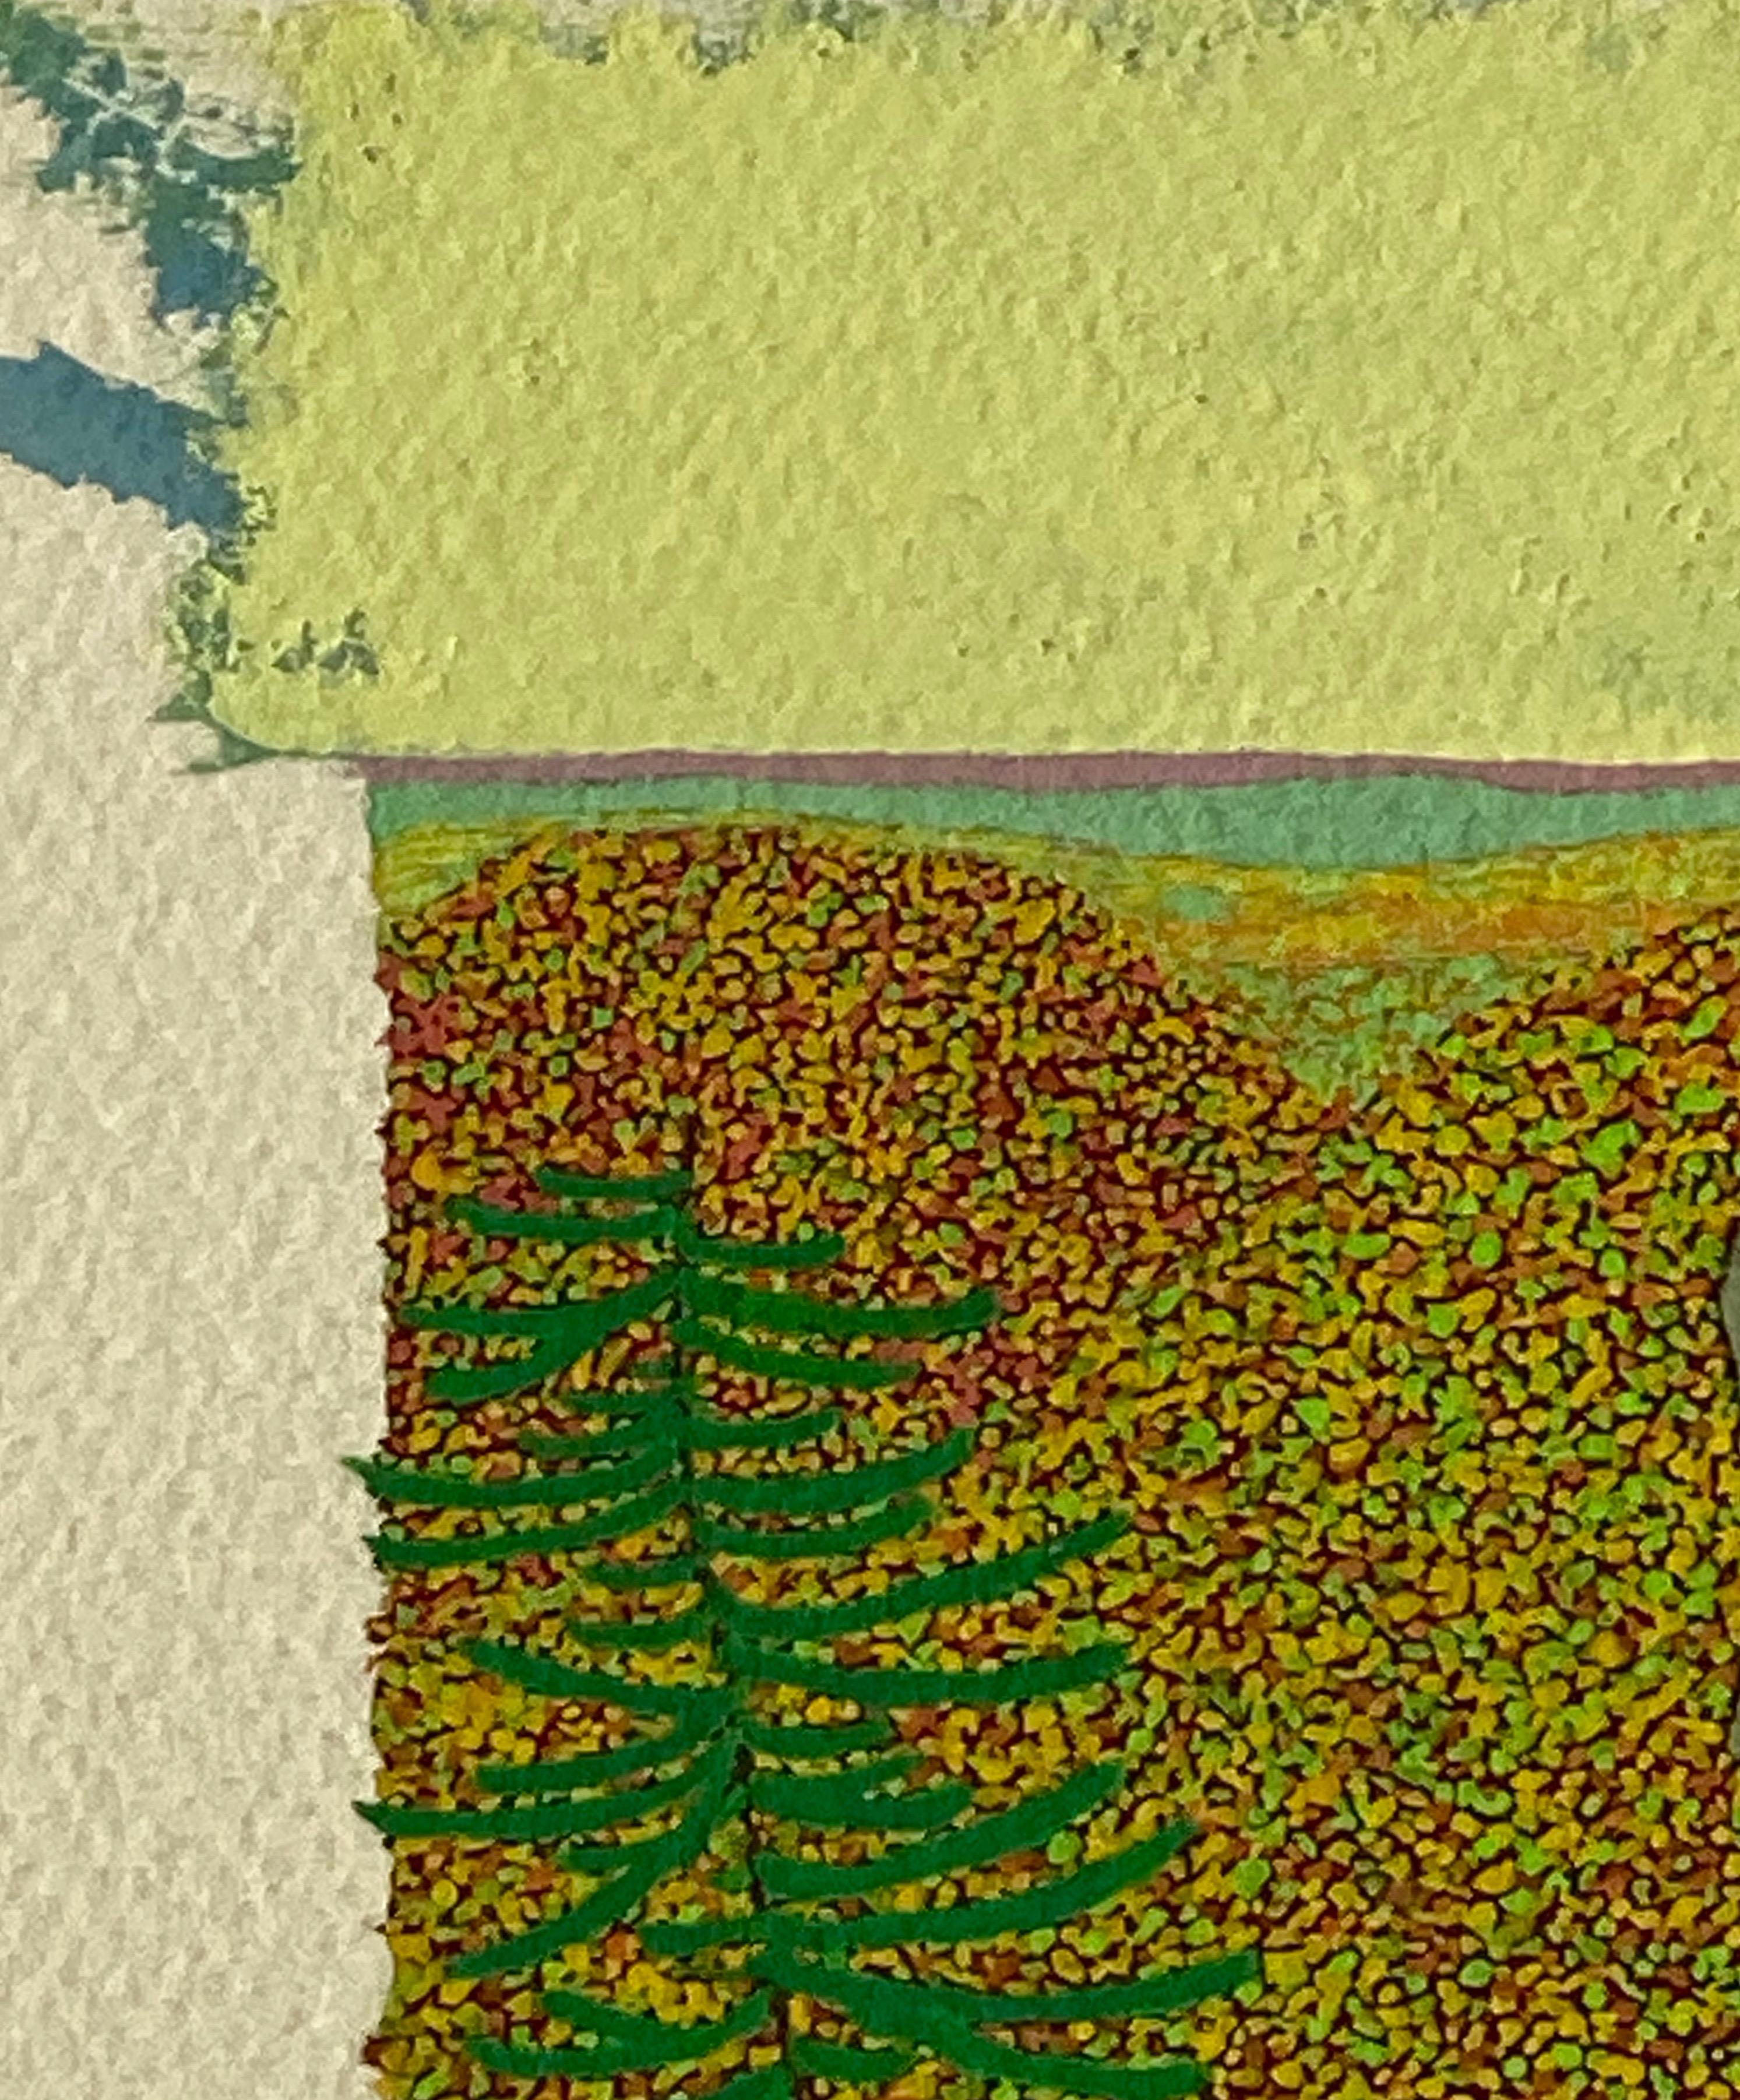 Dieses detailreiche Landschaftsgemälde zeigt einen Blick auf das Herbstlaub von einem grauen Felsen auf dem Wyatt Mountain in der Nähe von Gregory Hennens Haus in Virginia. Die vielen Schattierungen von Orange, Gelb und Grün stehen im Kontrast zu